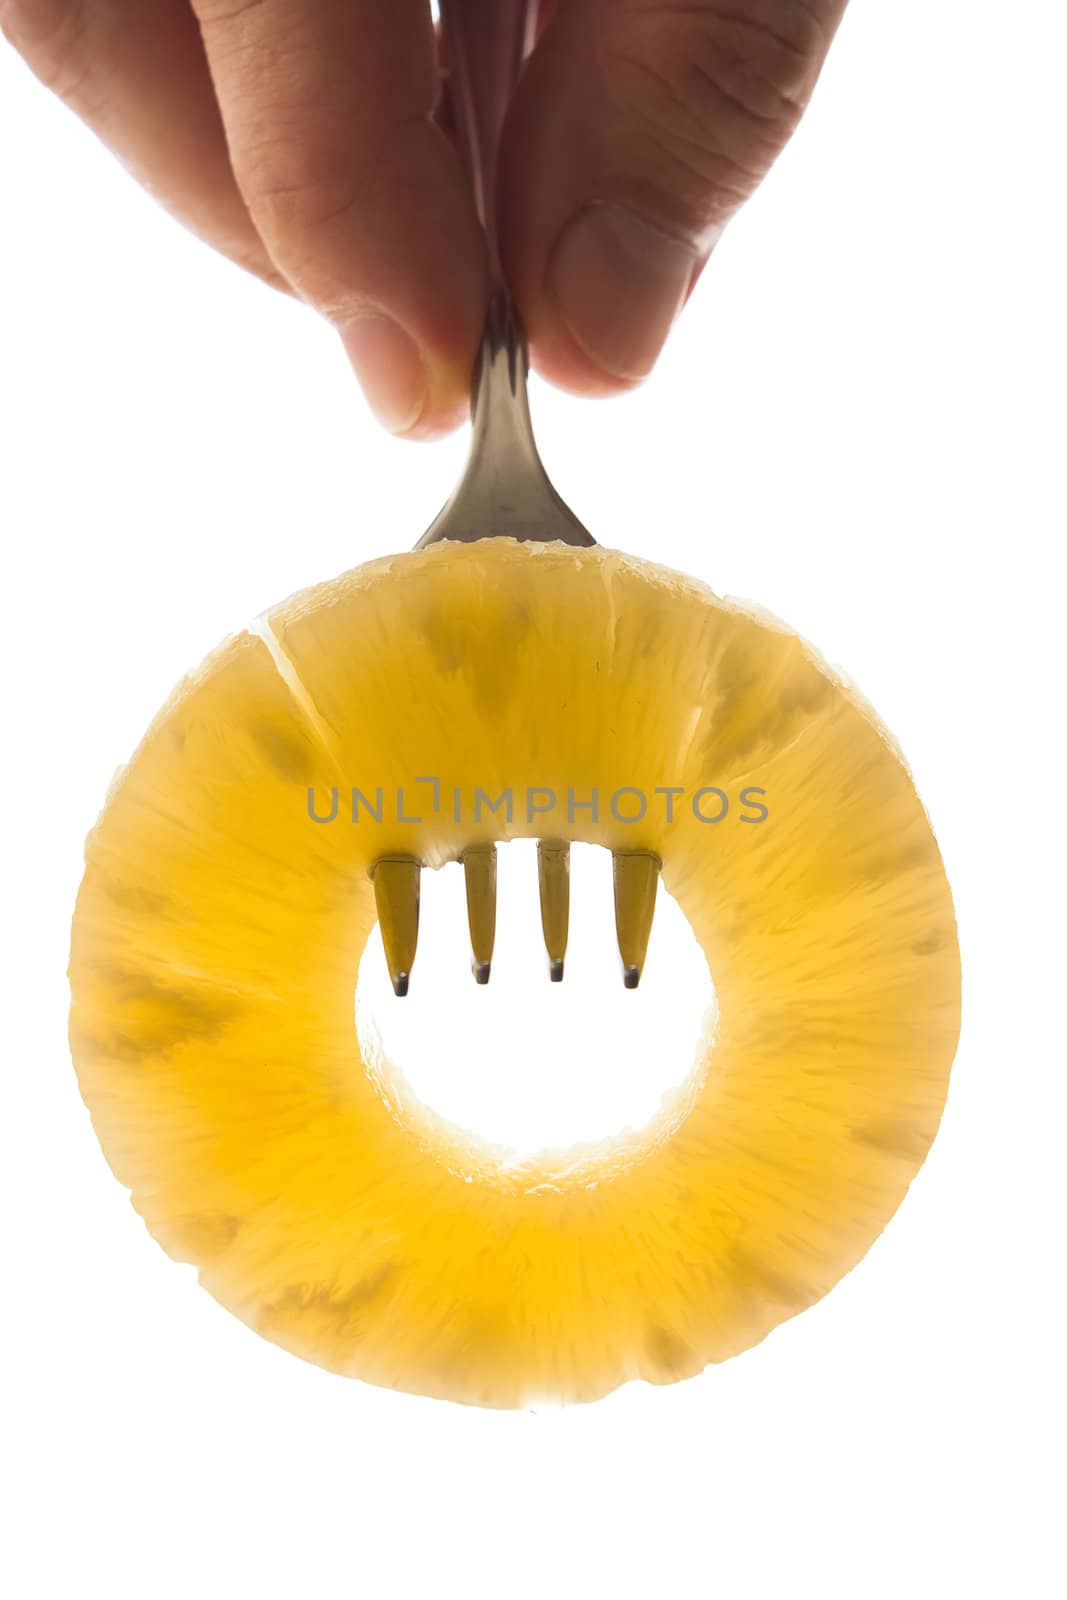 pineapple ring on a fork by oleg_zhukov